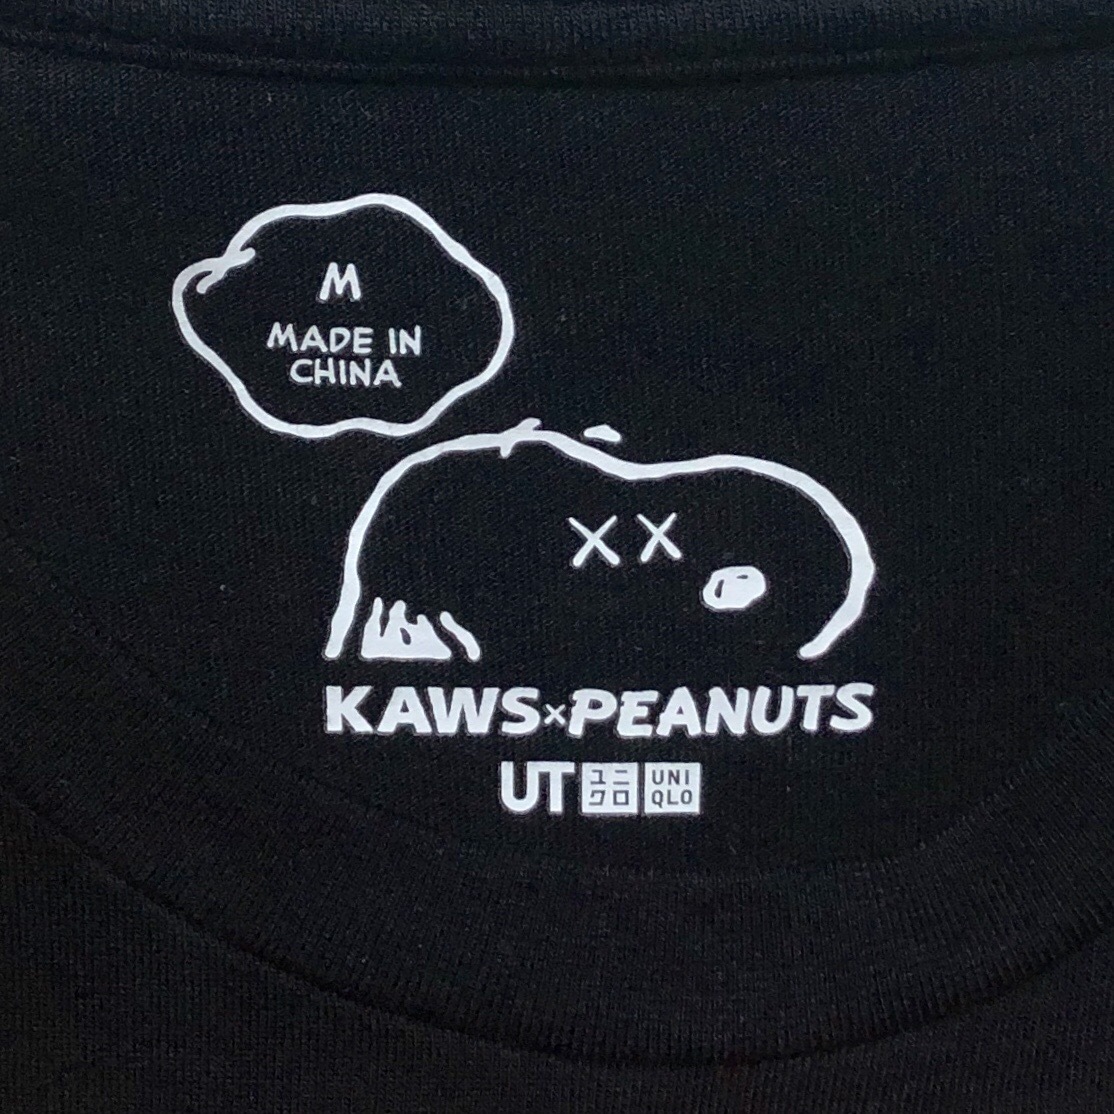 UNIQLO ユニクロ KAWS カウズ スヌーピー Tシャツ 黒 M 美品 管理B1143